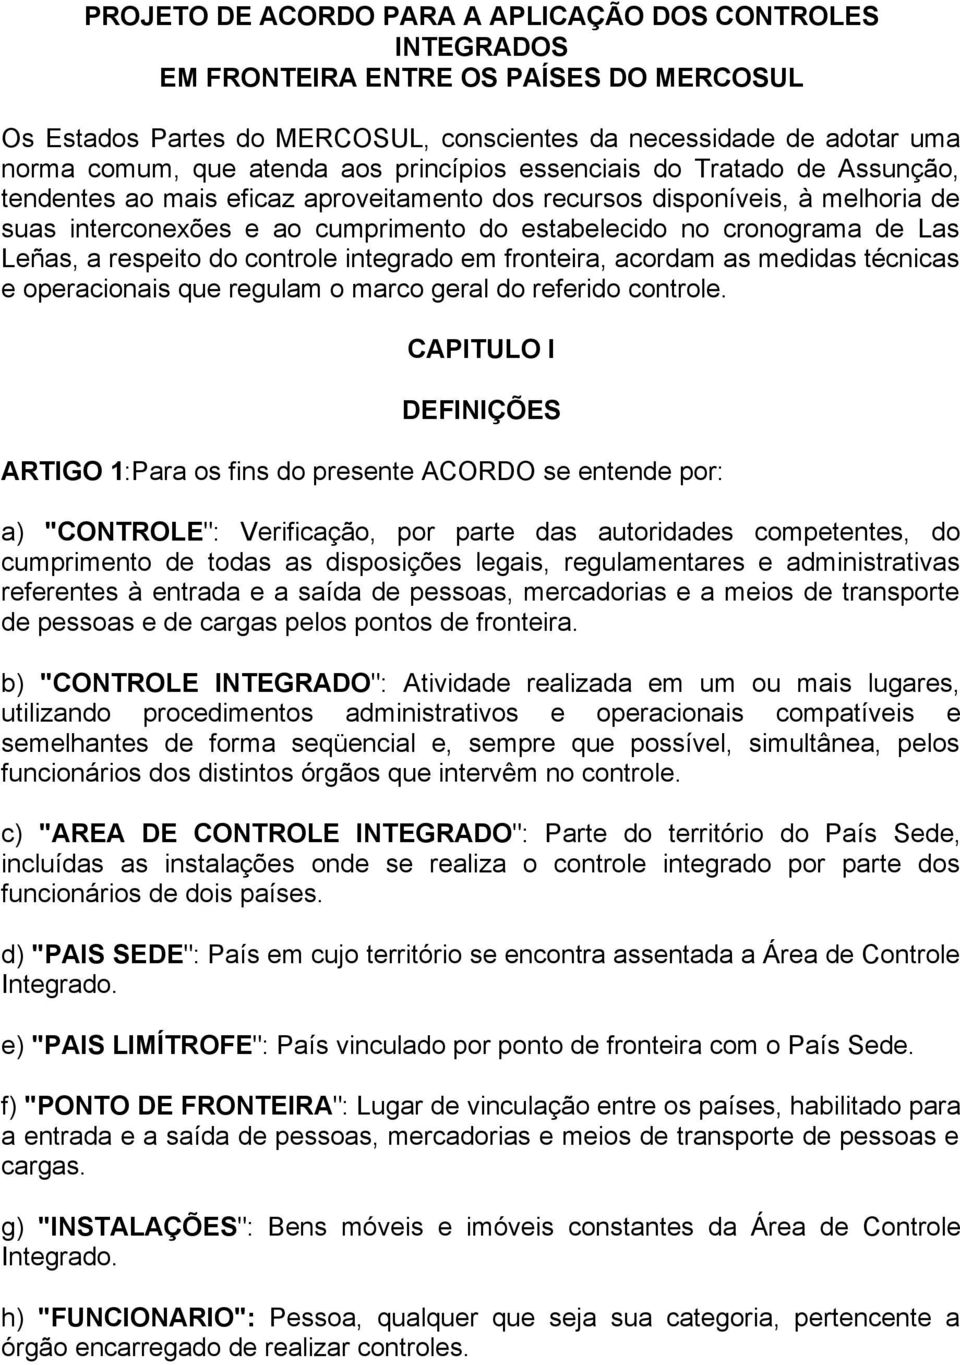 Las Leñas, a respeito do controle integrado em fronteira, acordam as medidas técnicas e operacionais que regulam o marco geral do referido controle.